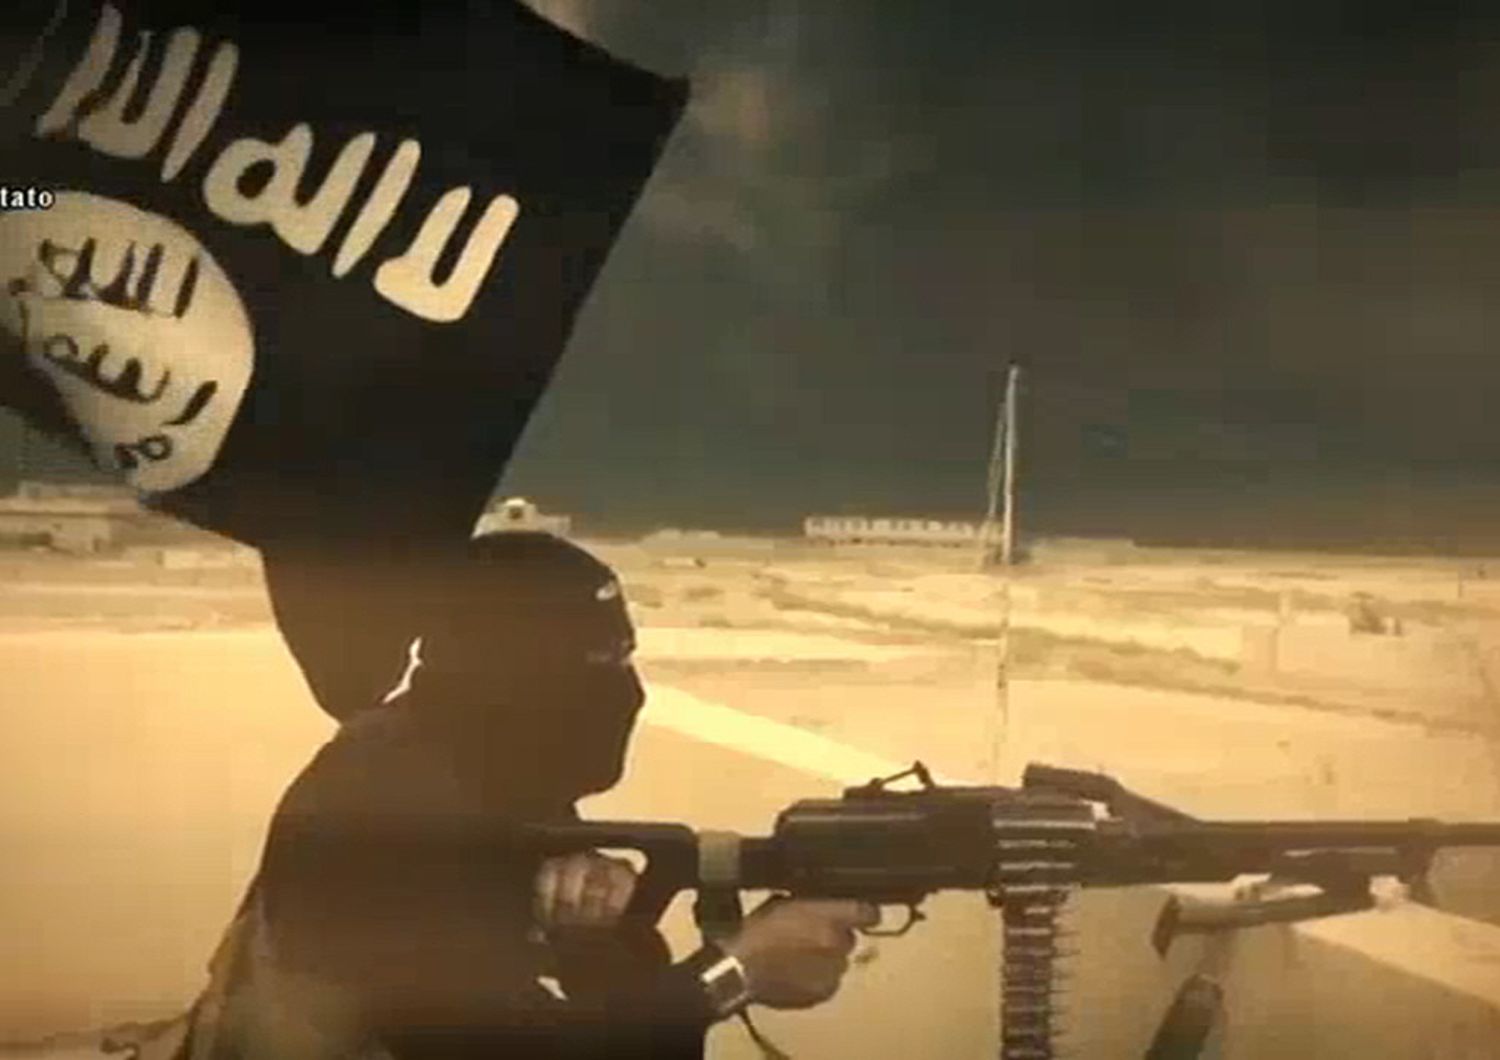 &nbsp; Immagini video Jihadista terrorista somalo arrestato a Campobasso